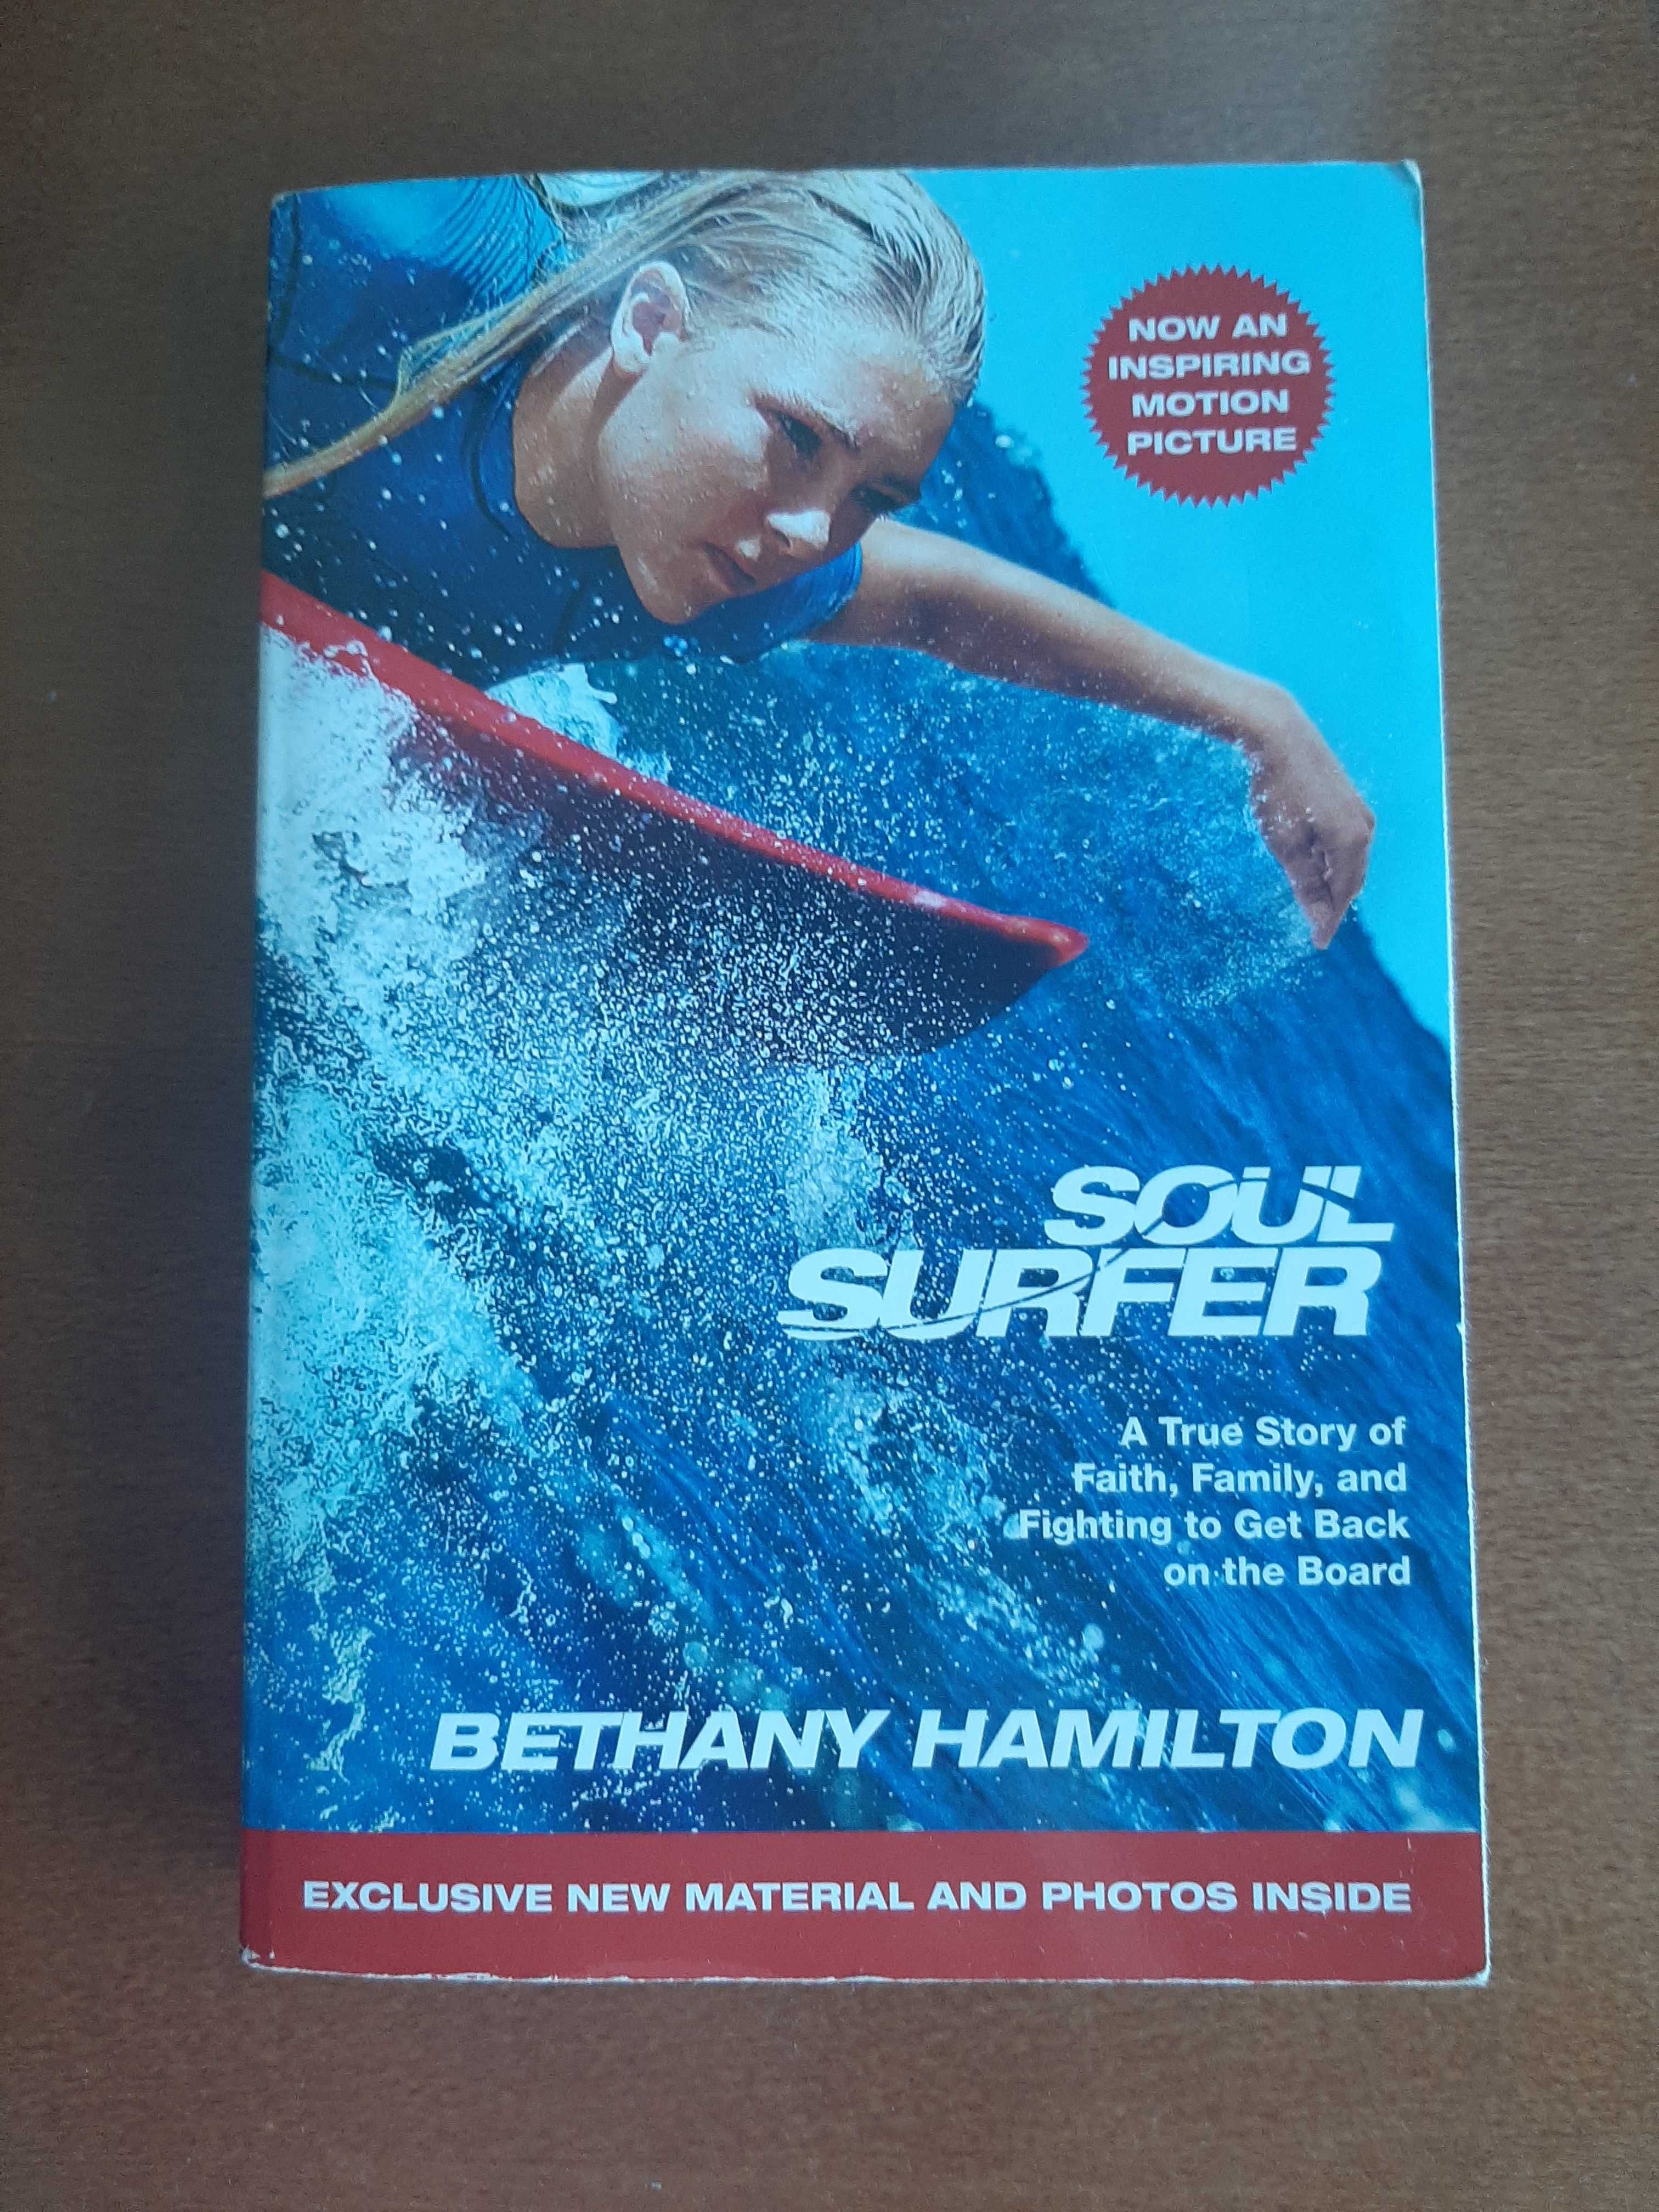 Livro "Soul surfer", de Bethany Hamilton (em inglês)